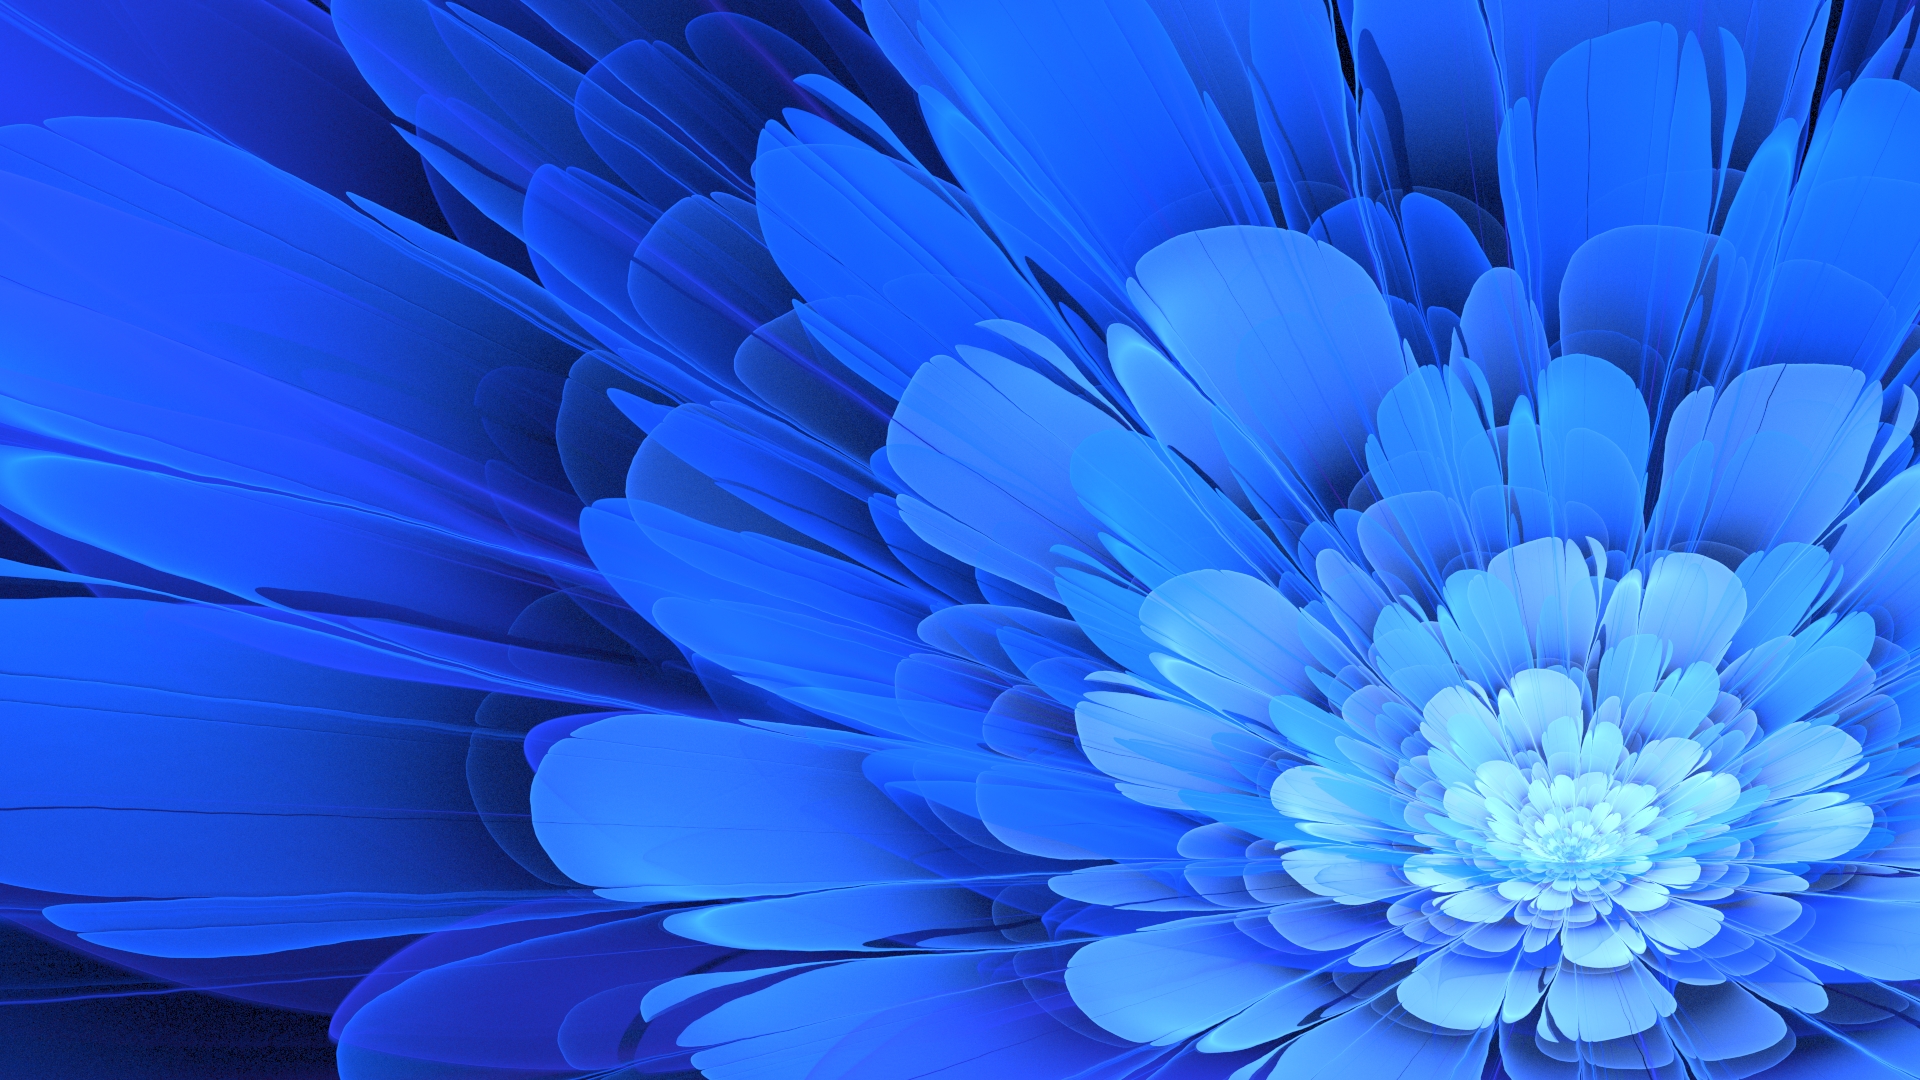 General 1920x1080 flowers Apophysis blue flowers blue